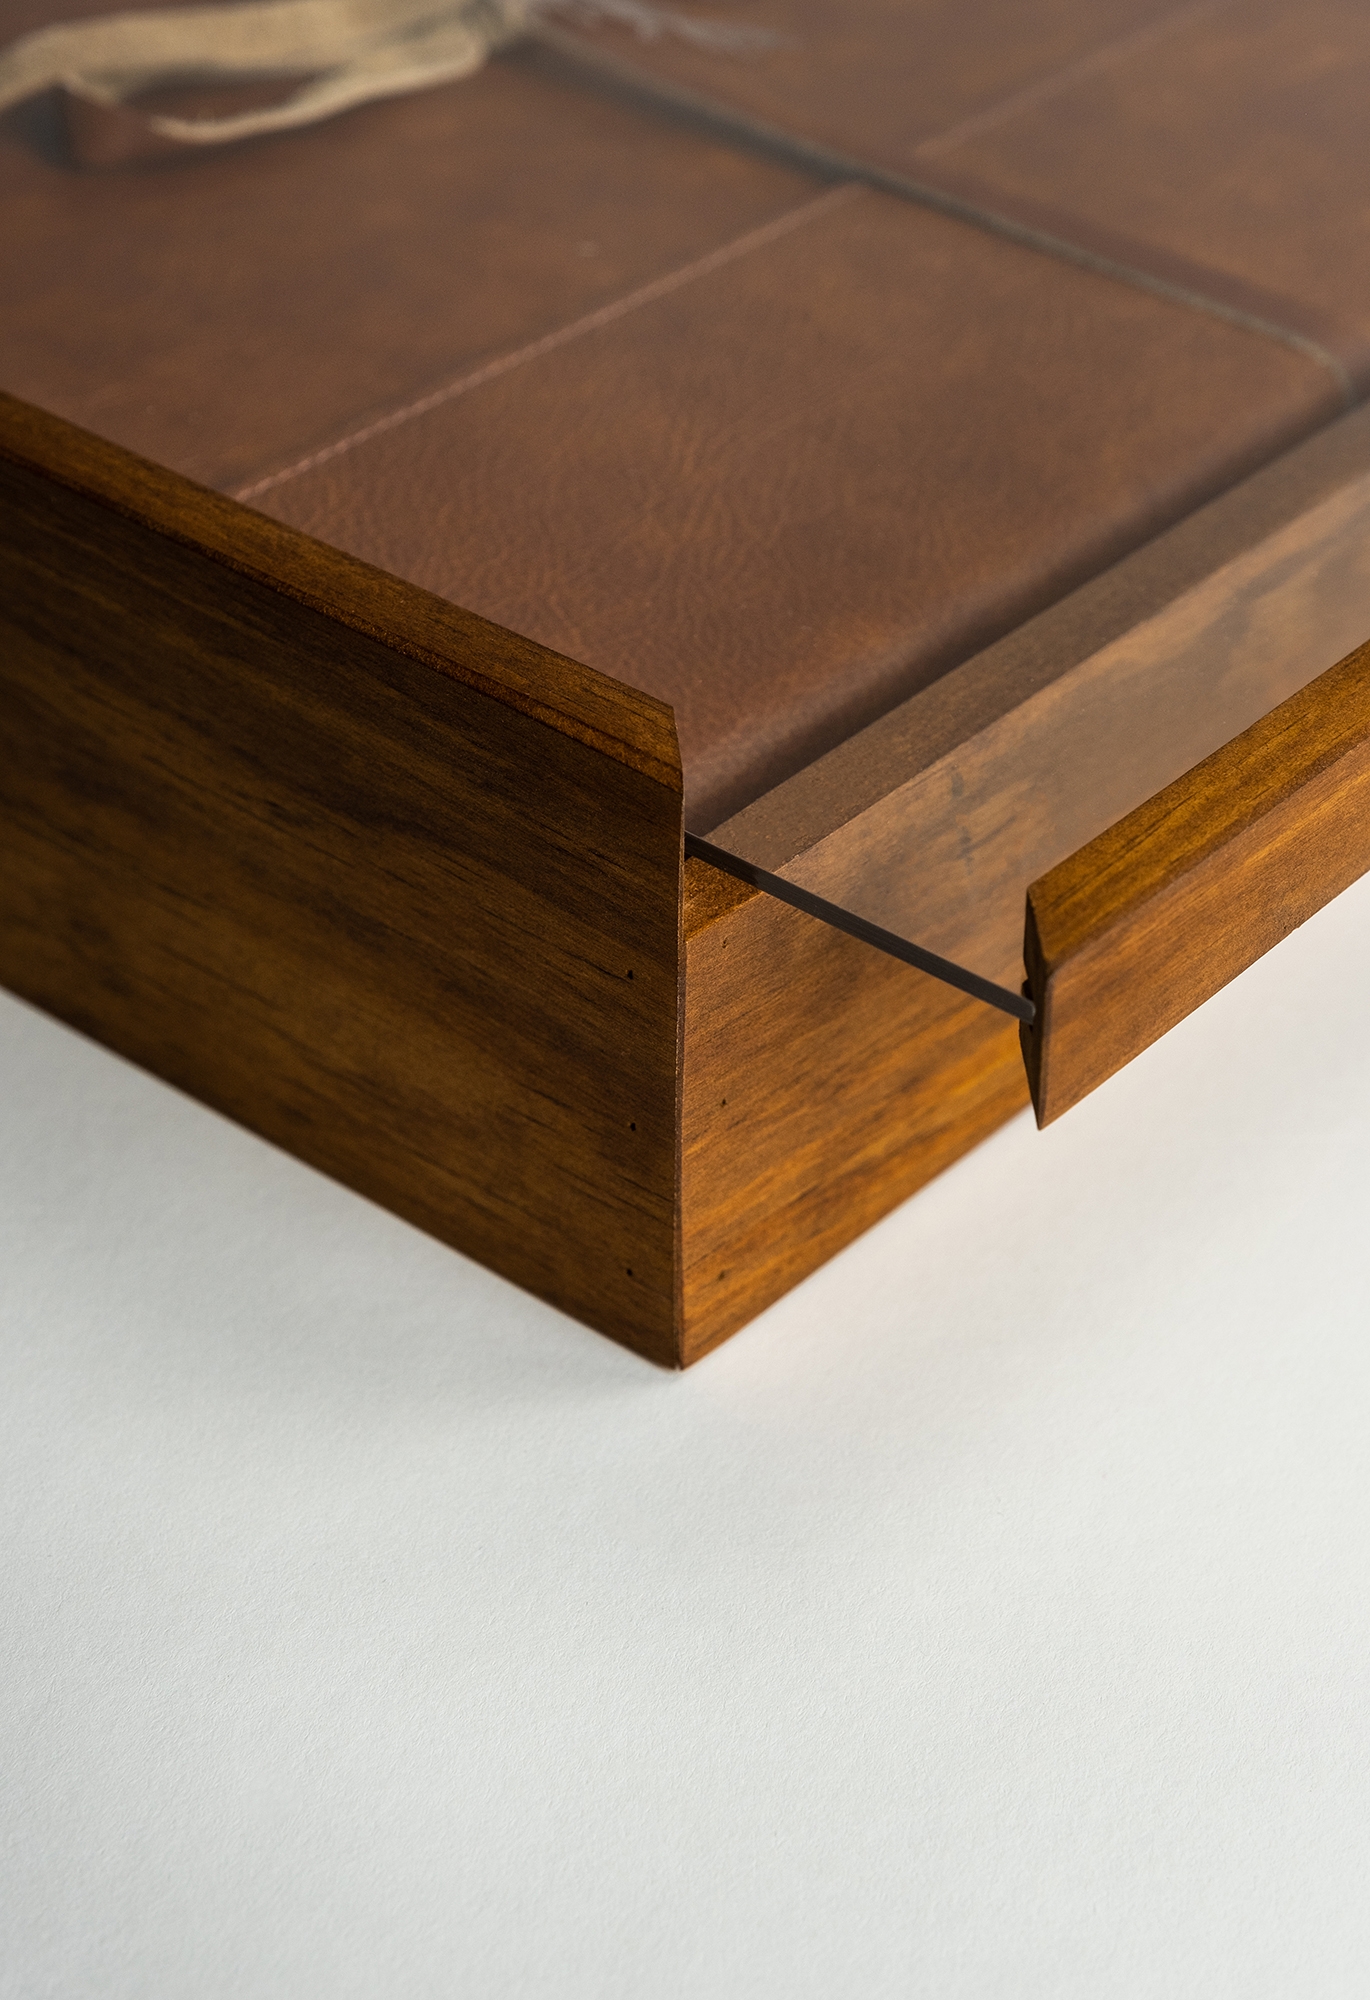 Wood Clear Box Konstruktive Details 2